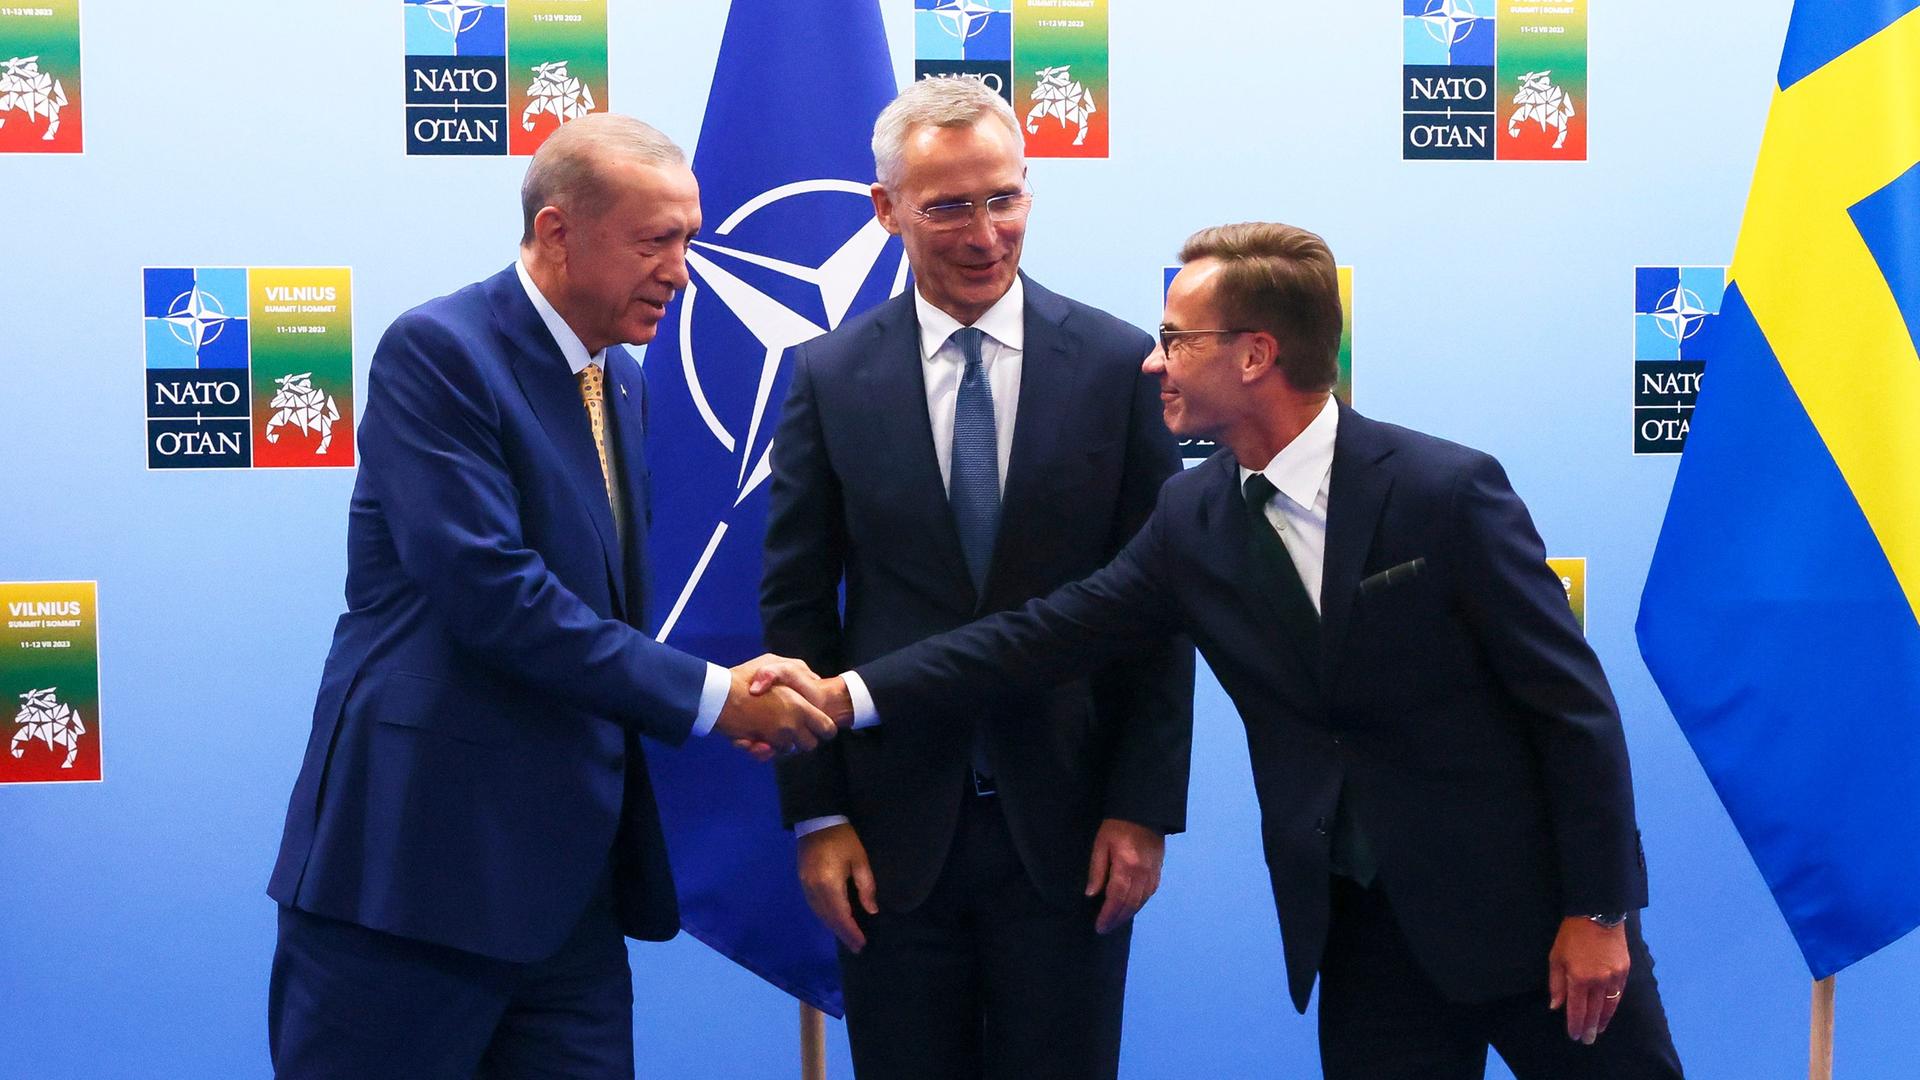 Der türkische Präsident Erdogan (links) schüttelt die Hand von Schwedens Premierminister Kristersson. In der Mitte steht NATO-Generalsekretär Erdogan.